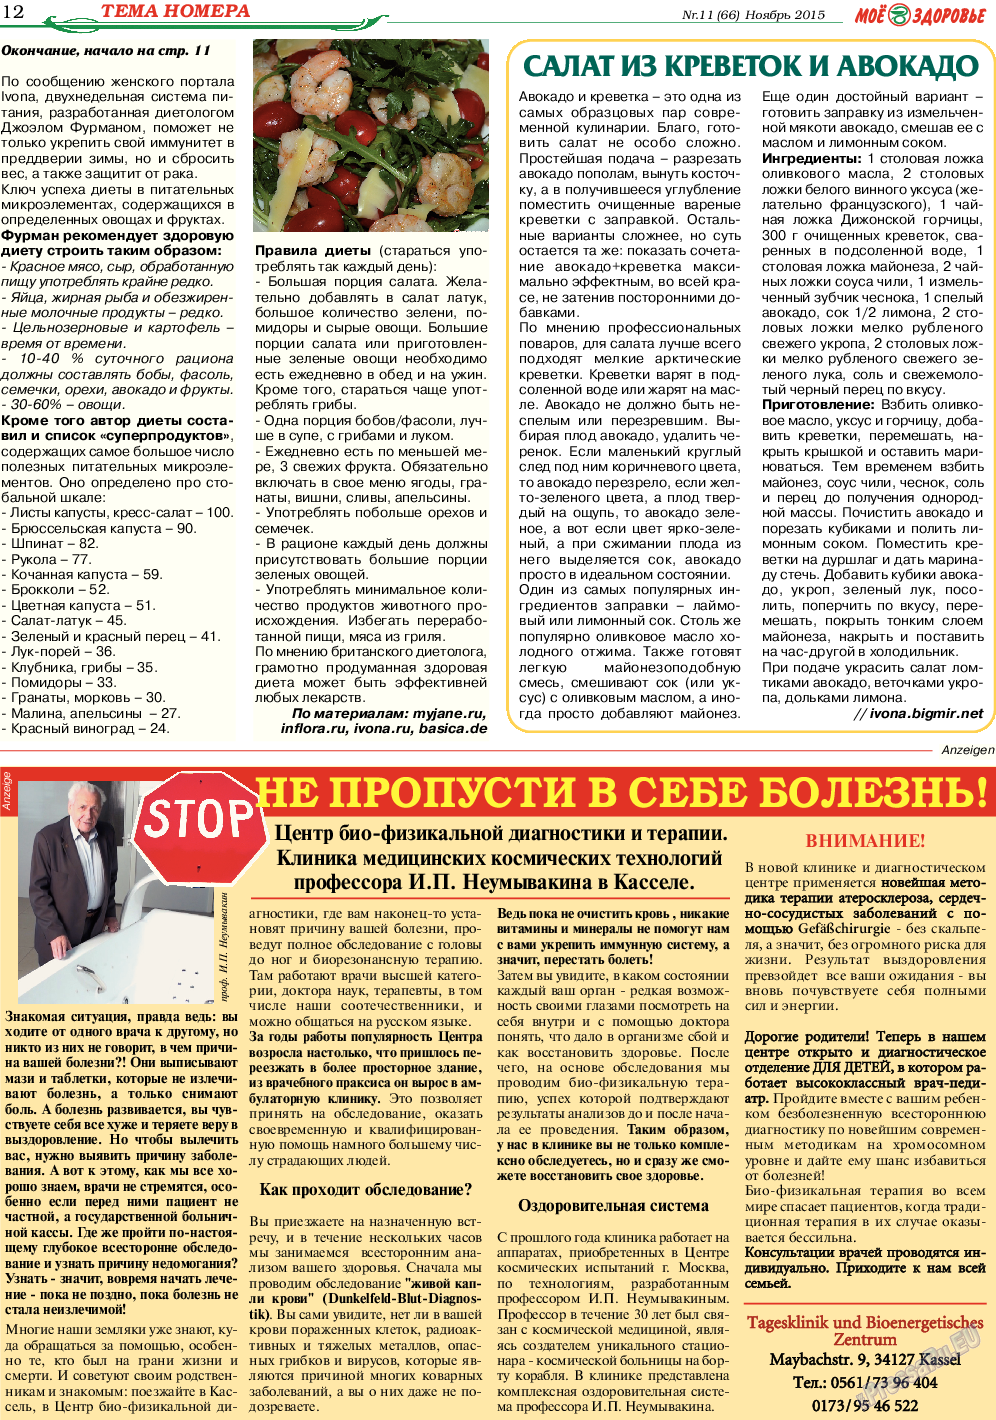 Кругозор, газета. 2015 №11 стр.12